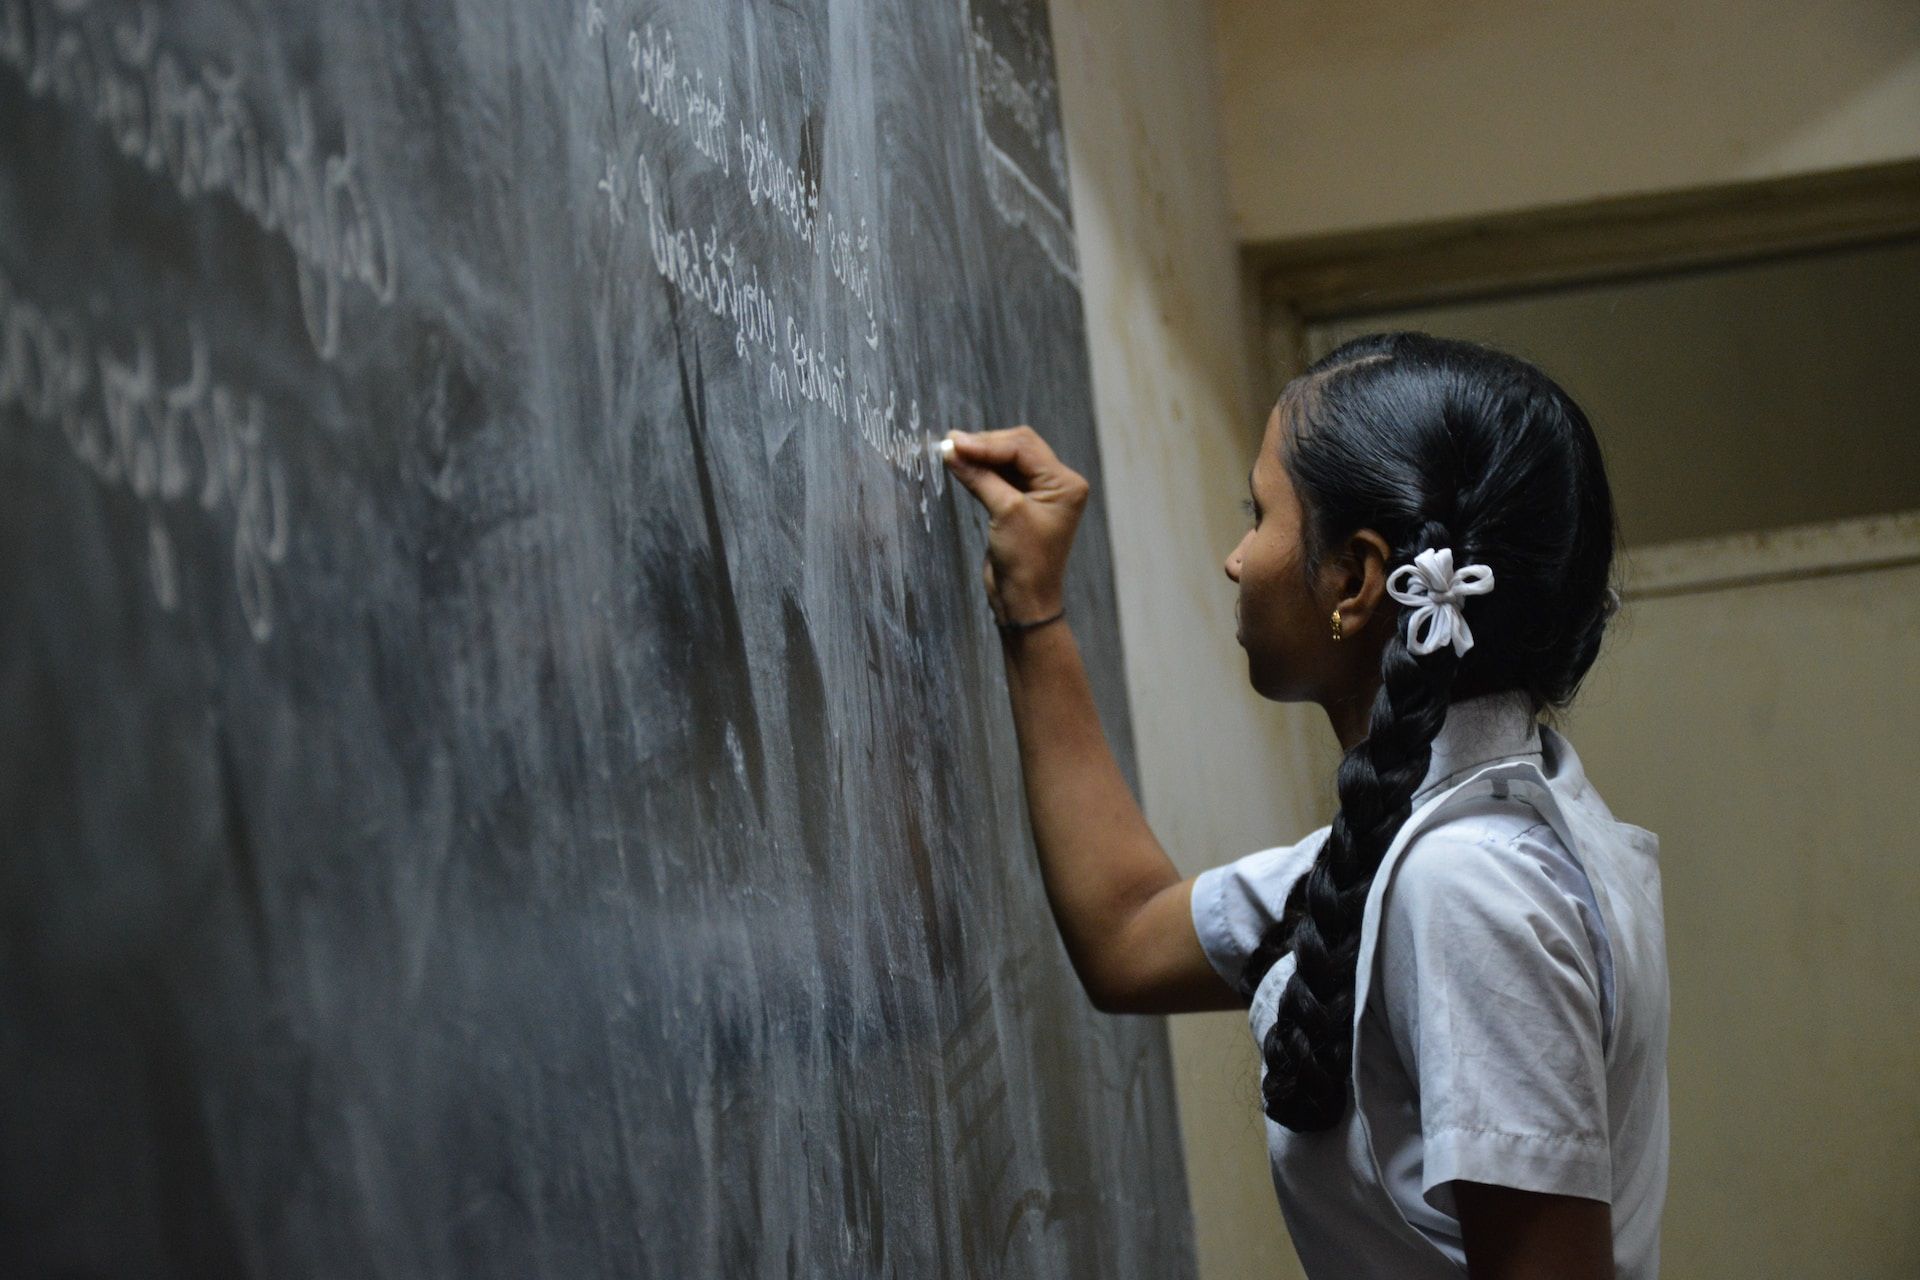 Une jeune fille en uniforme scolaire Ã©crit au tableau - Photo de Nikhita S sur https://unsplash.com/fr/photos/NsPDiPFTp4c